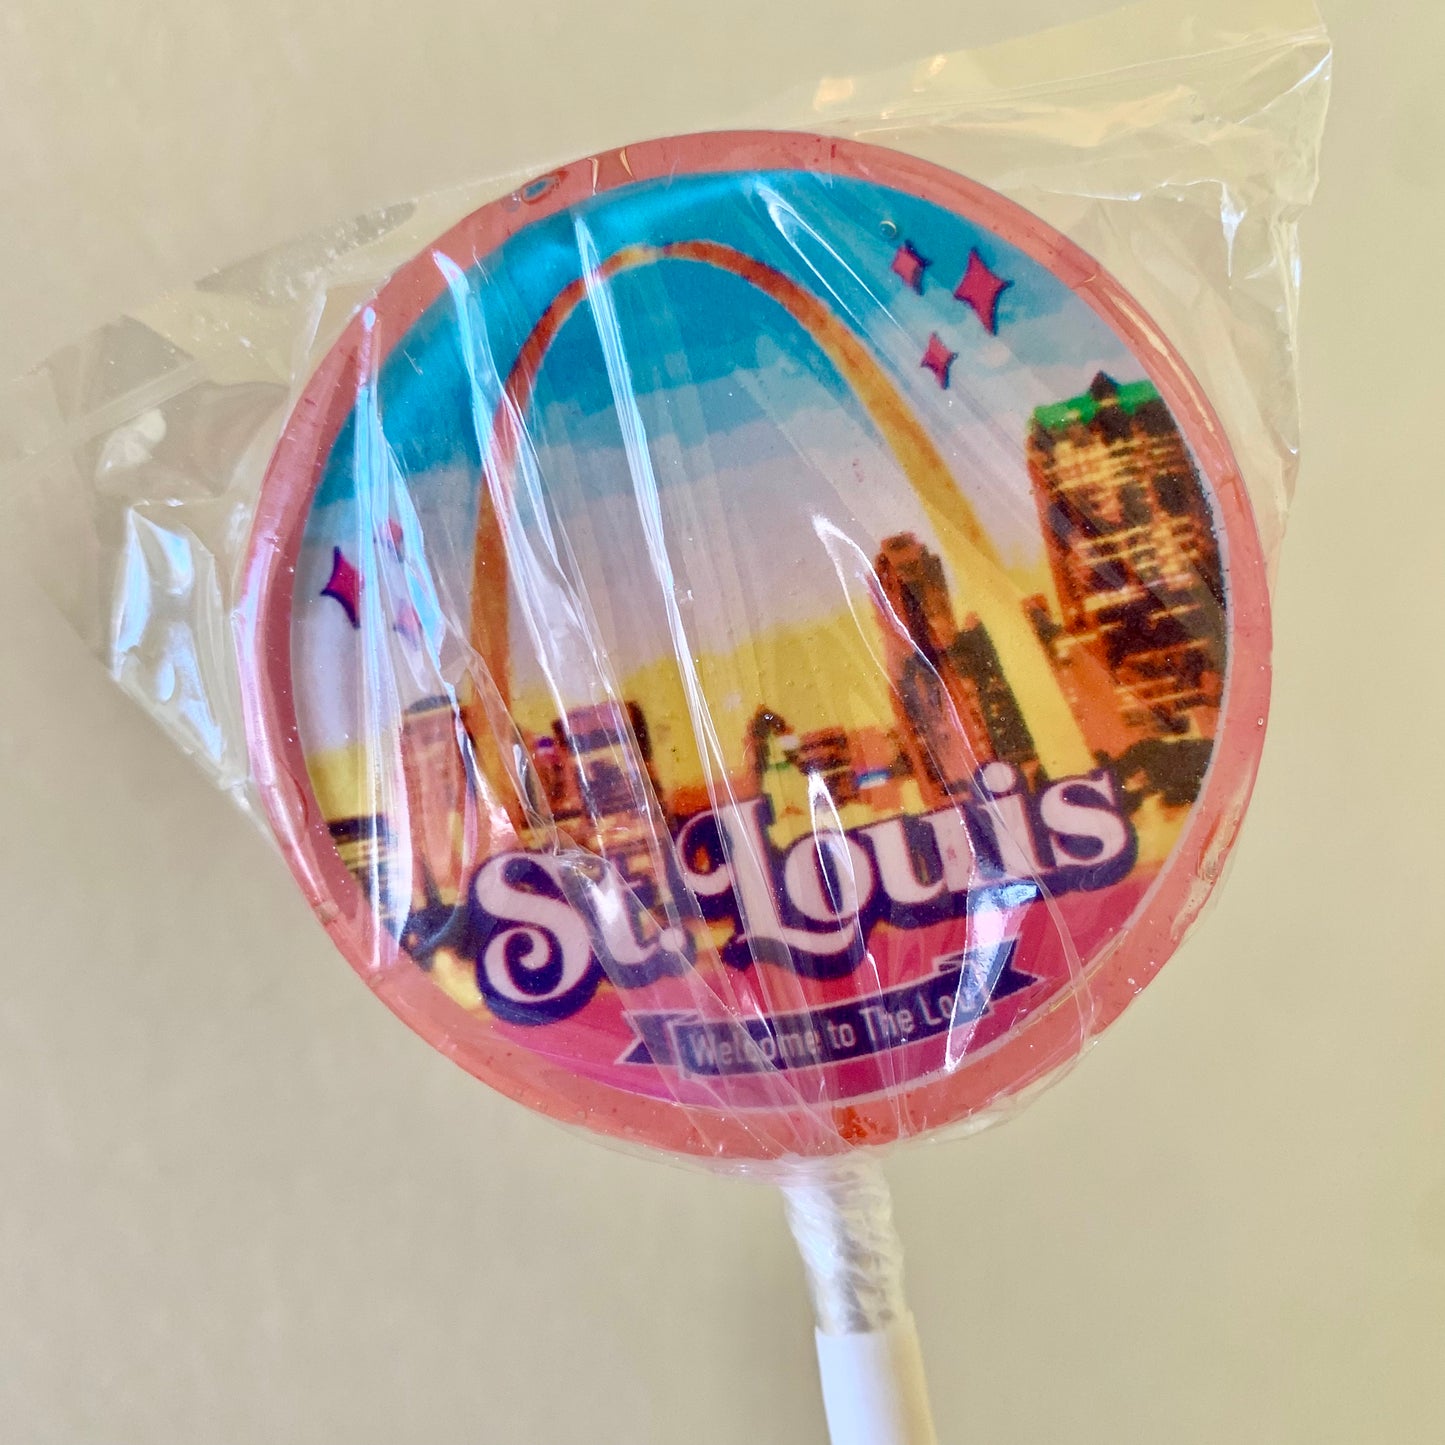 St. Louis Image 2.25” Lollipop LOCAL PICKUP